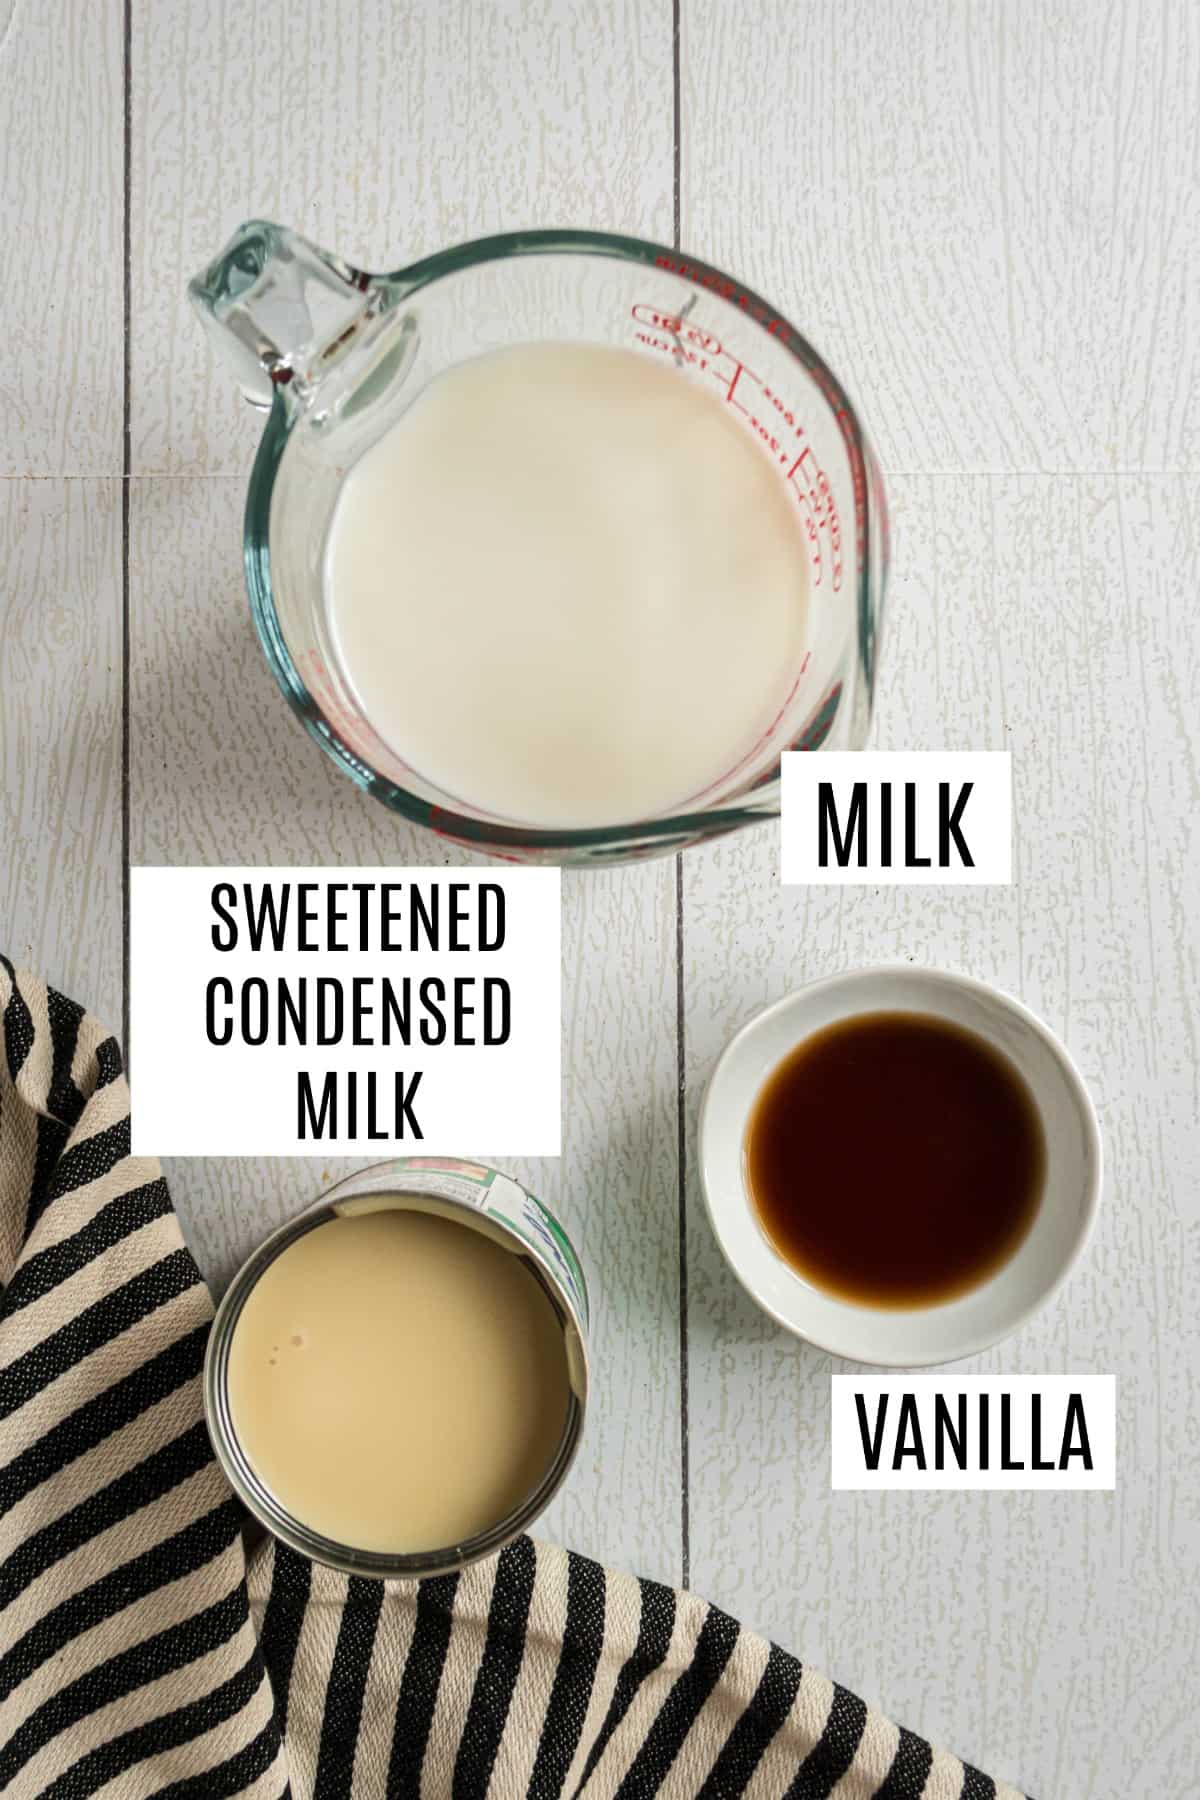 How To Make Homemade Coffee Creamer